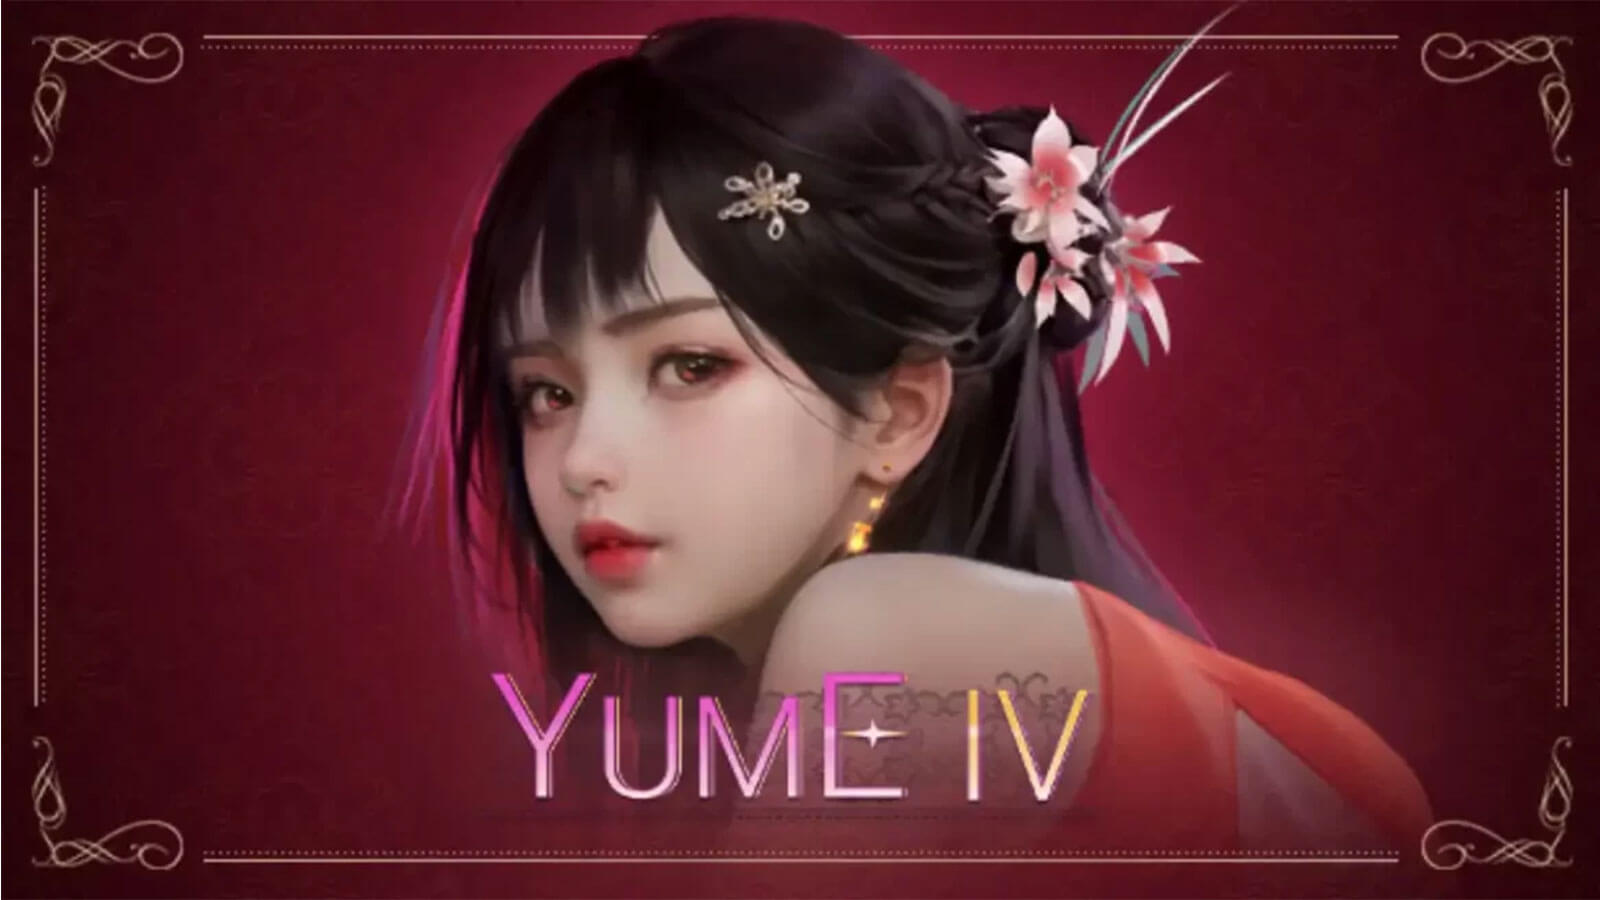 Yume IV Việt Hóa - Nữ Idol Đáng Yêu Mà Ai Cũng Đều Yêu Thích